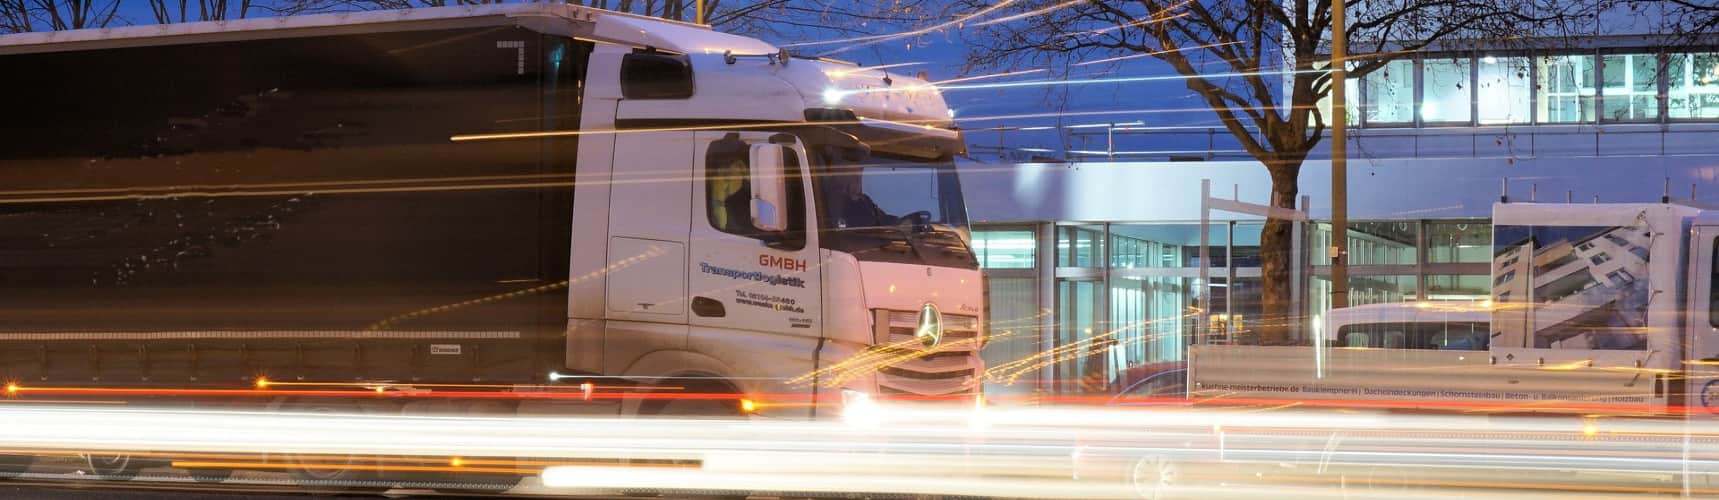 manifesto de carga: um caminhão circula para entrega